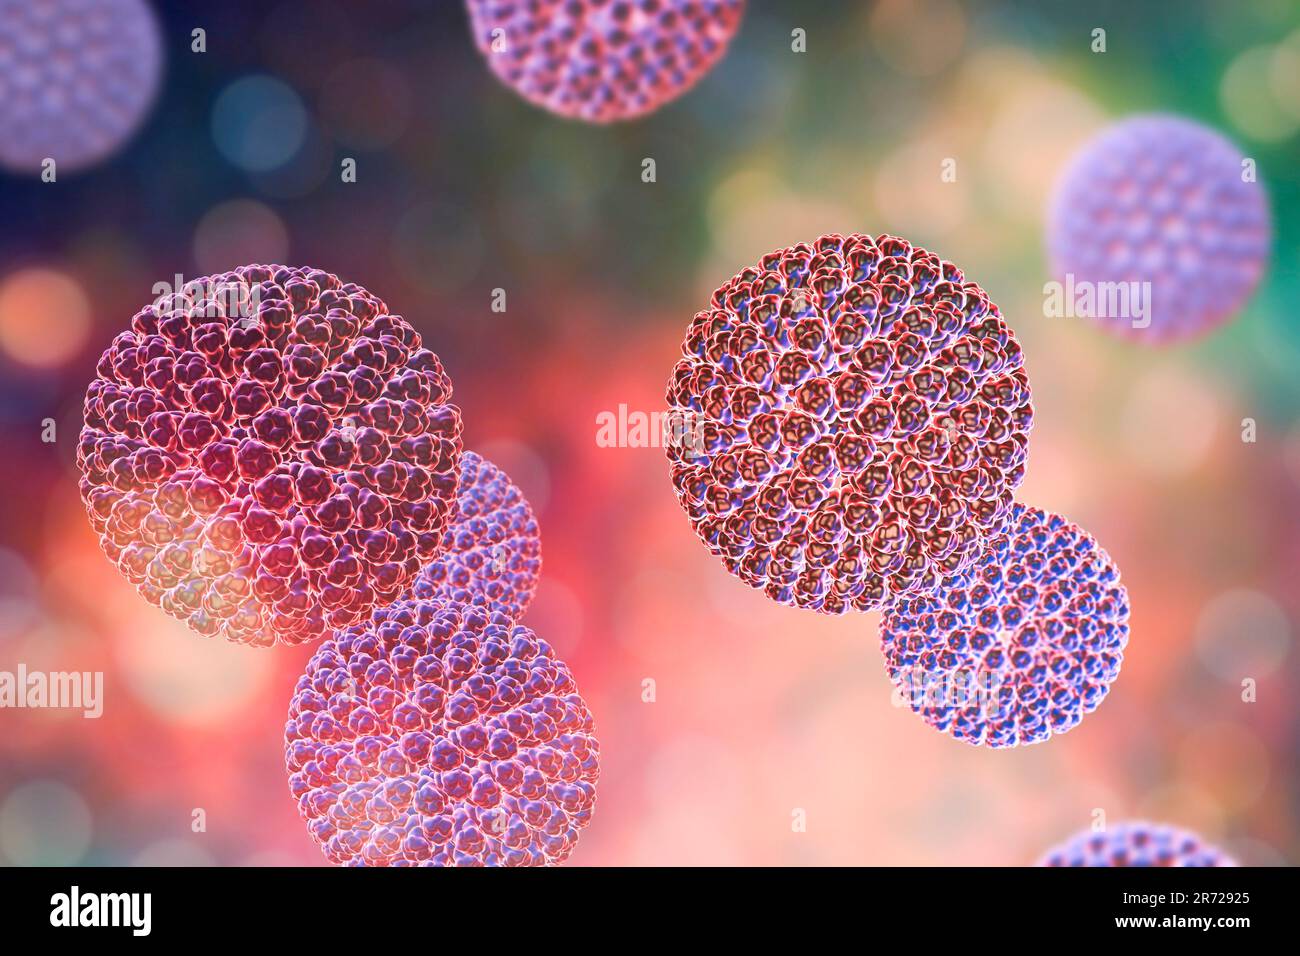 Rotaviruspartikel, Computergrafiken. Das Viruspartikel besteht aus einem RNA-Kern (Ribonukleinsäure), der von einem dreischichtigen Kapsid umgeben ist. Rotaviruse Stockfoto